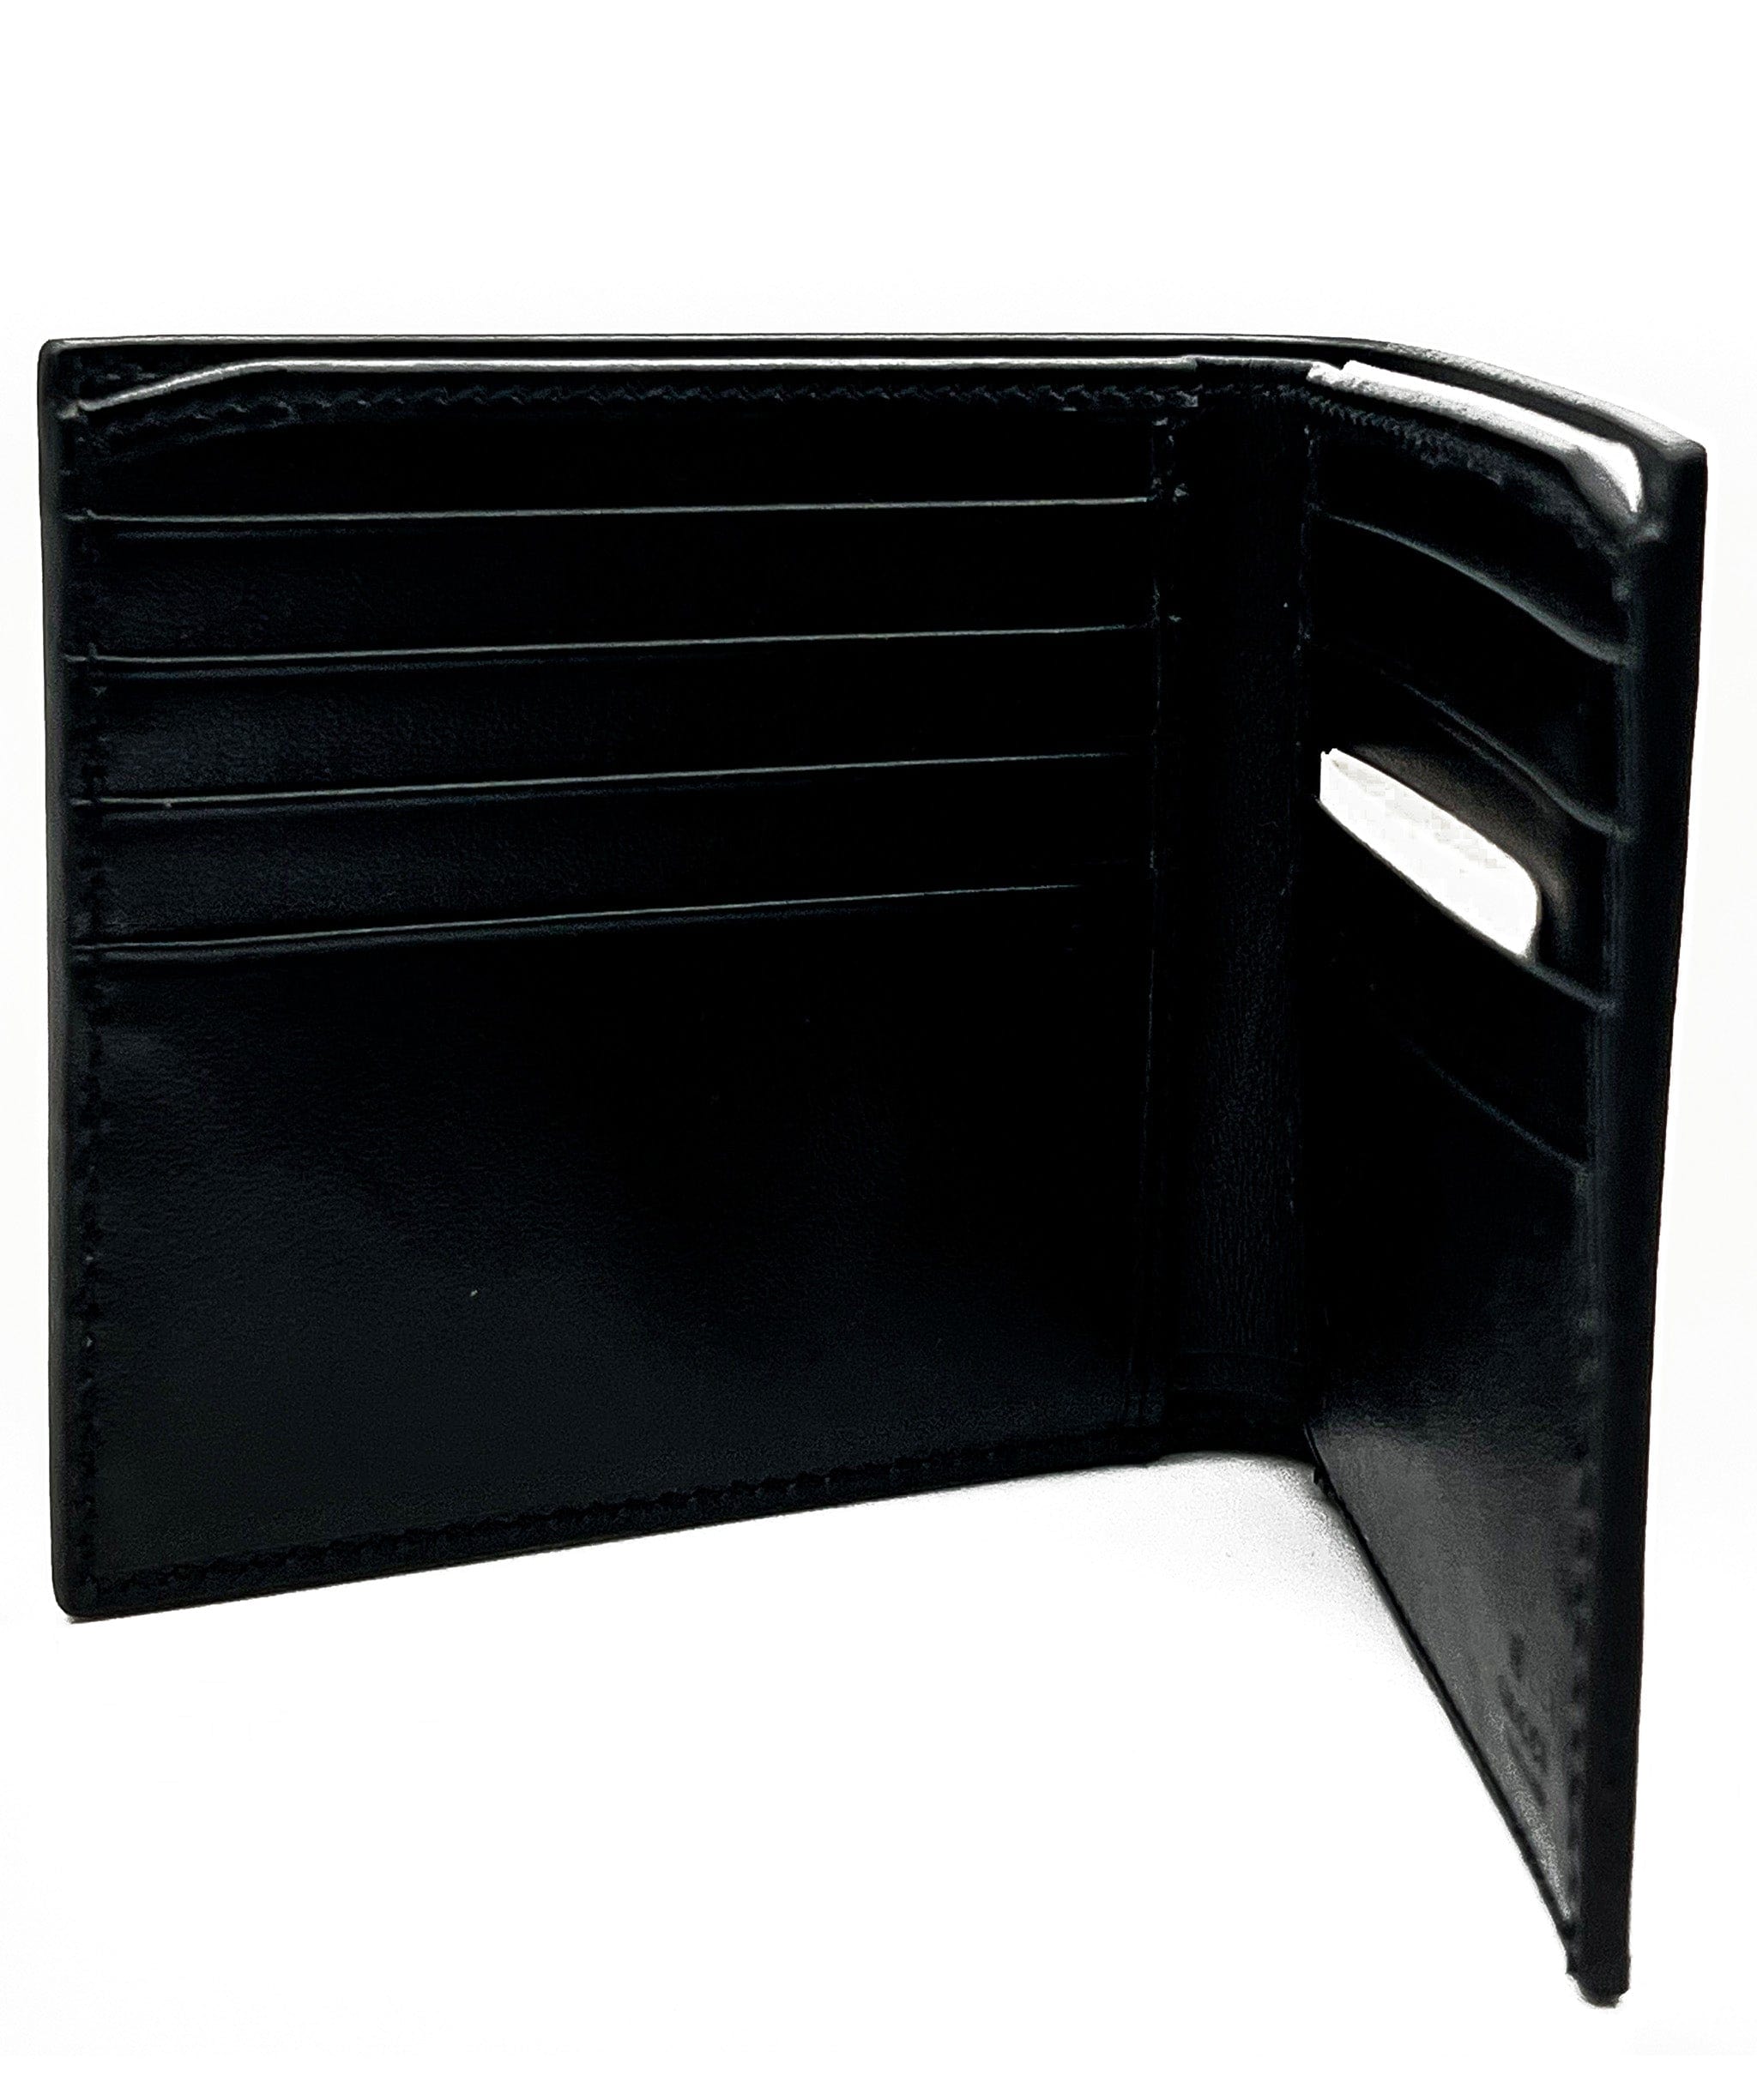 Gucci Gucci Bi fold wallet RJL1781